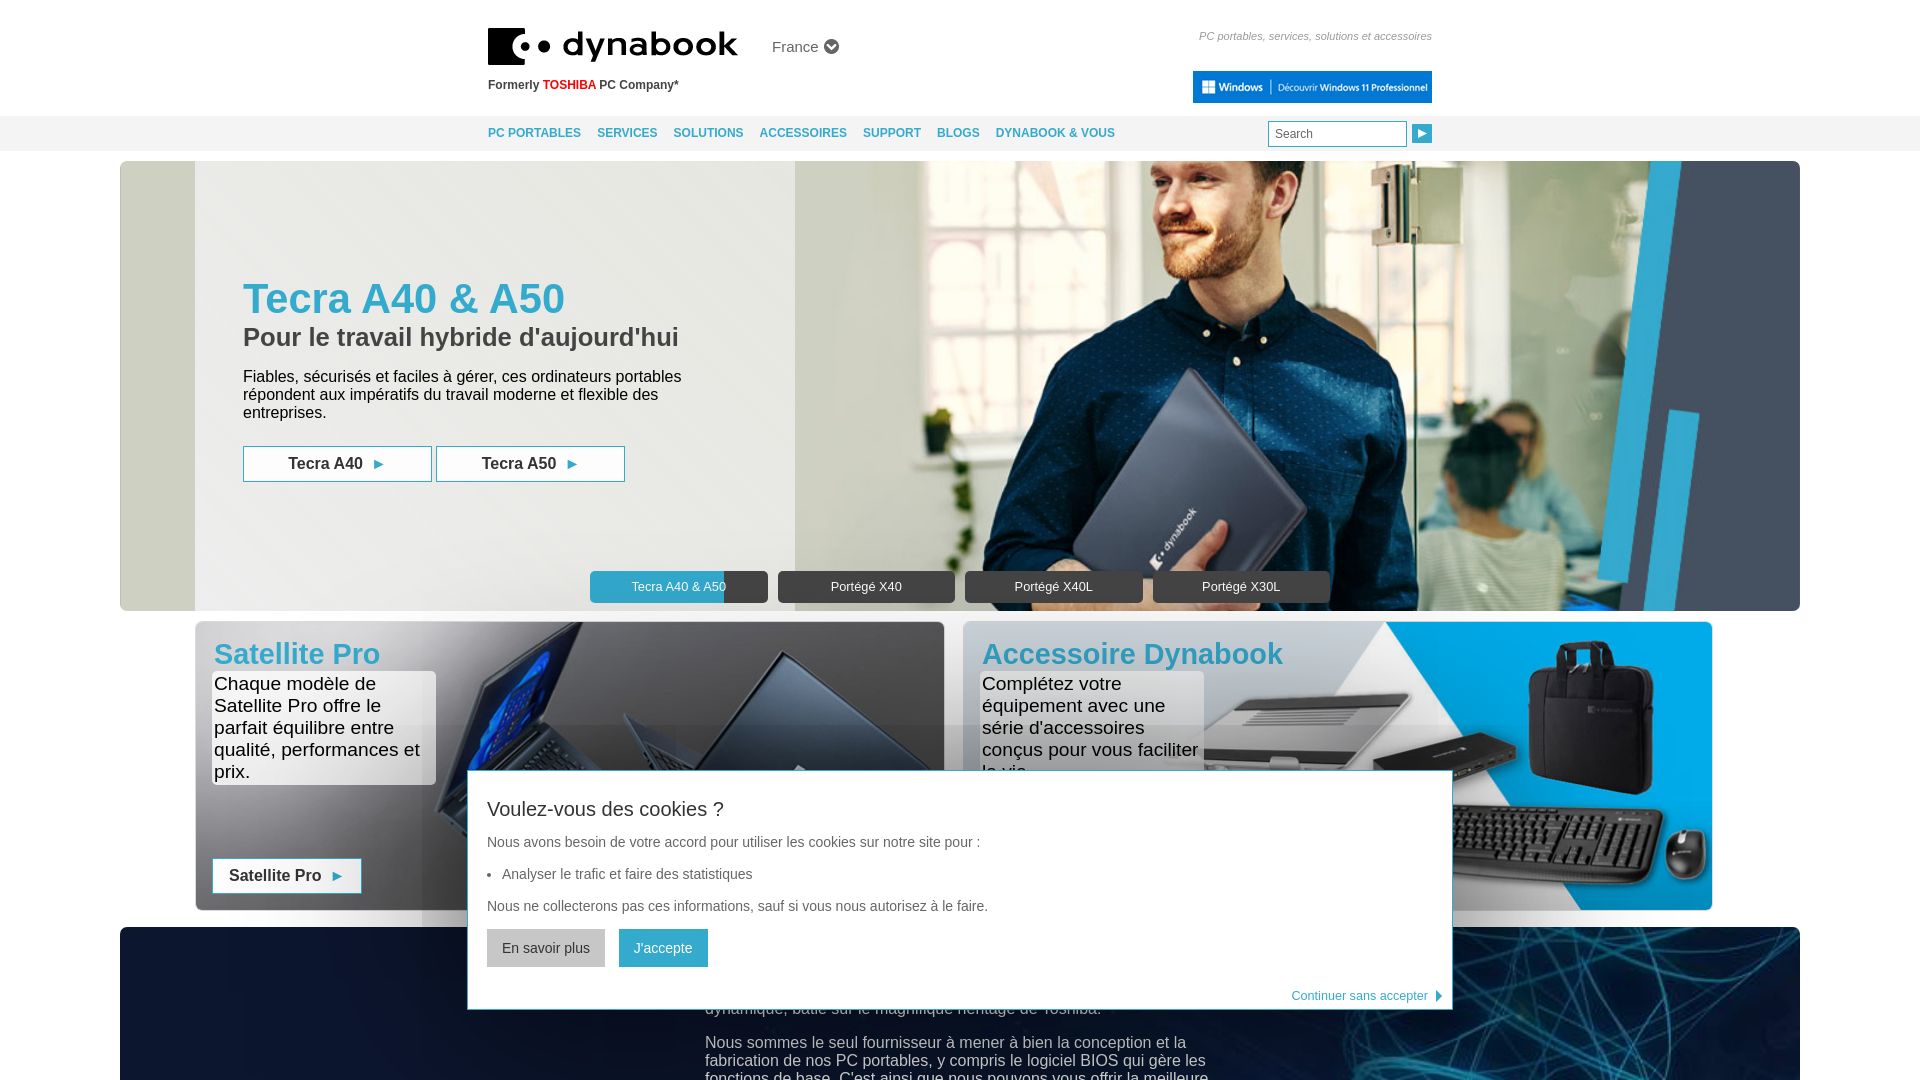 网站状态 dynabook.com 是  在线的